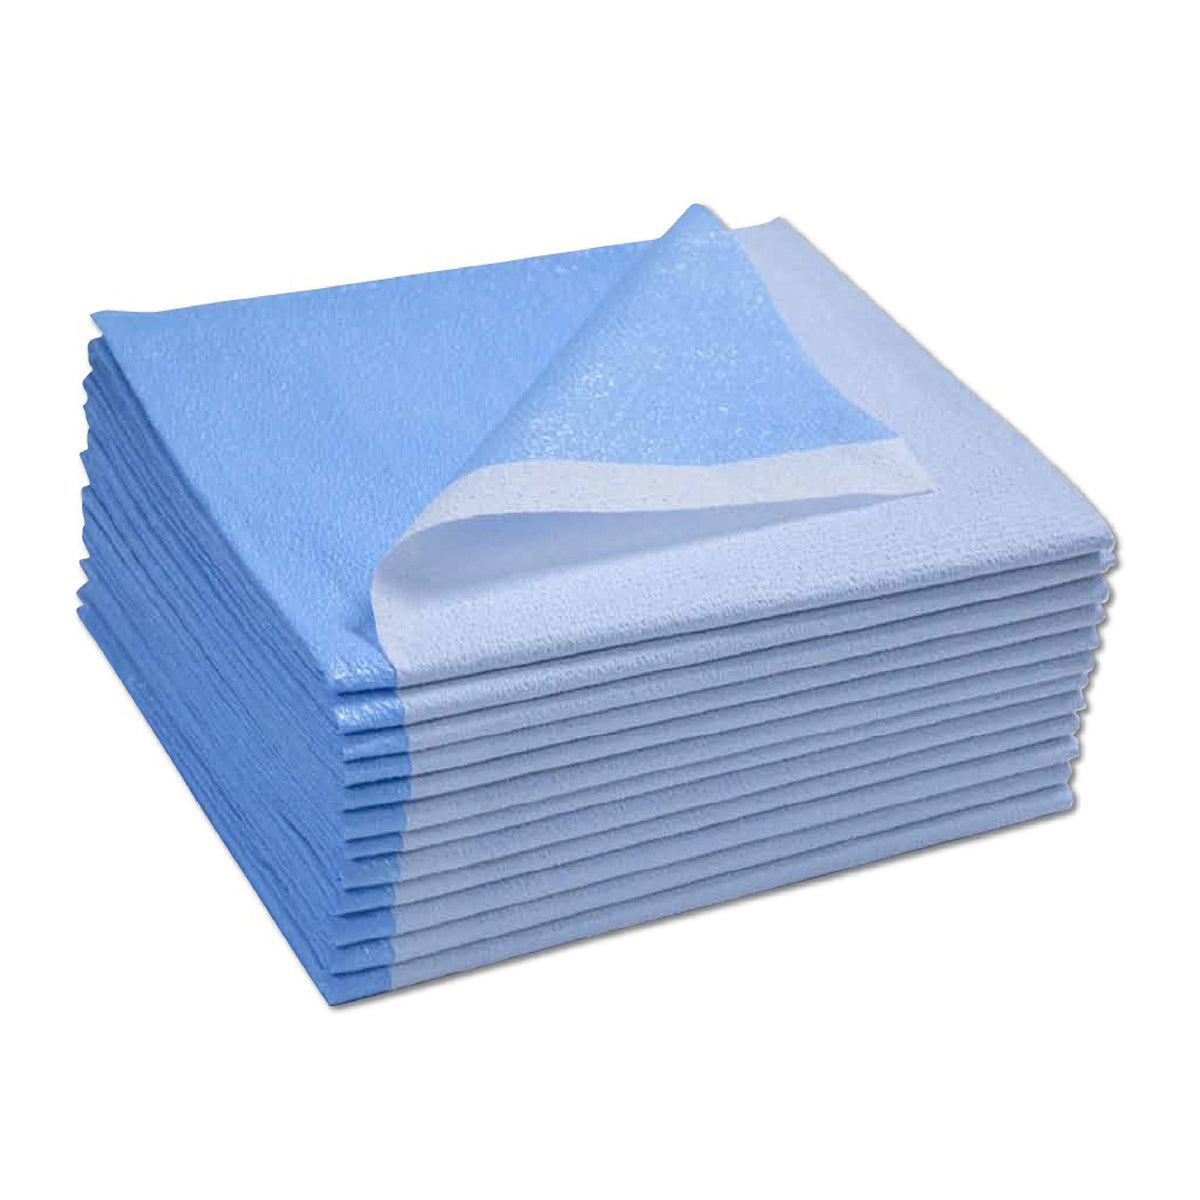 Drape Sheets (100)  -  Blue - 40" x 60"